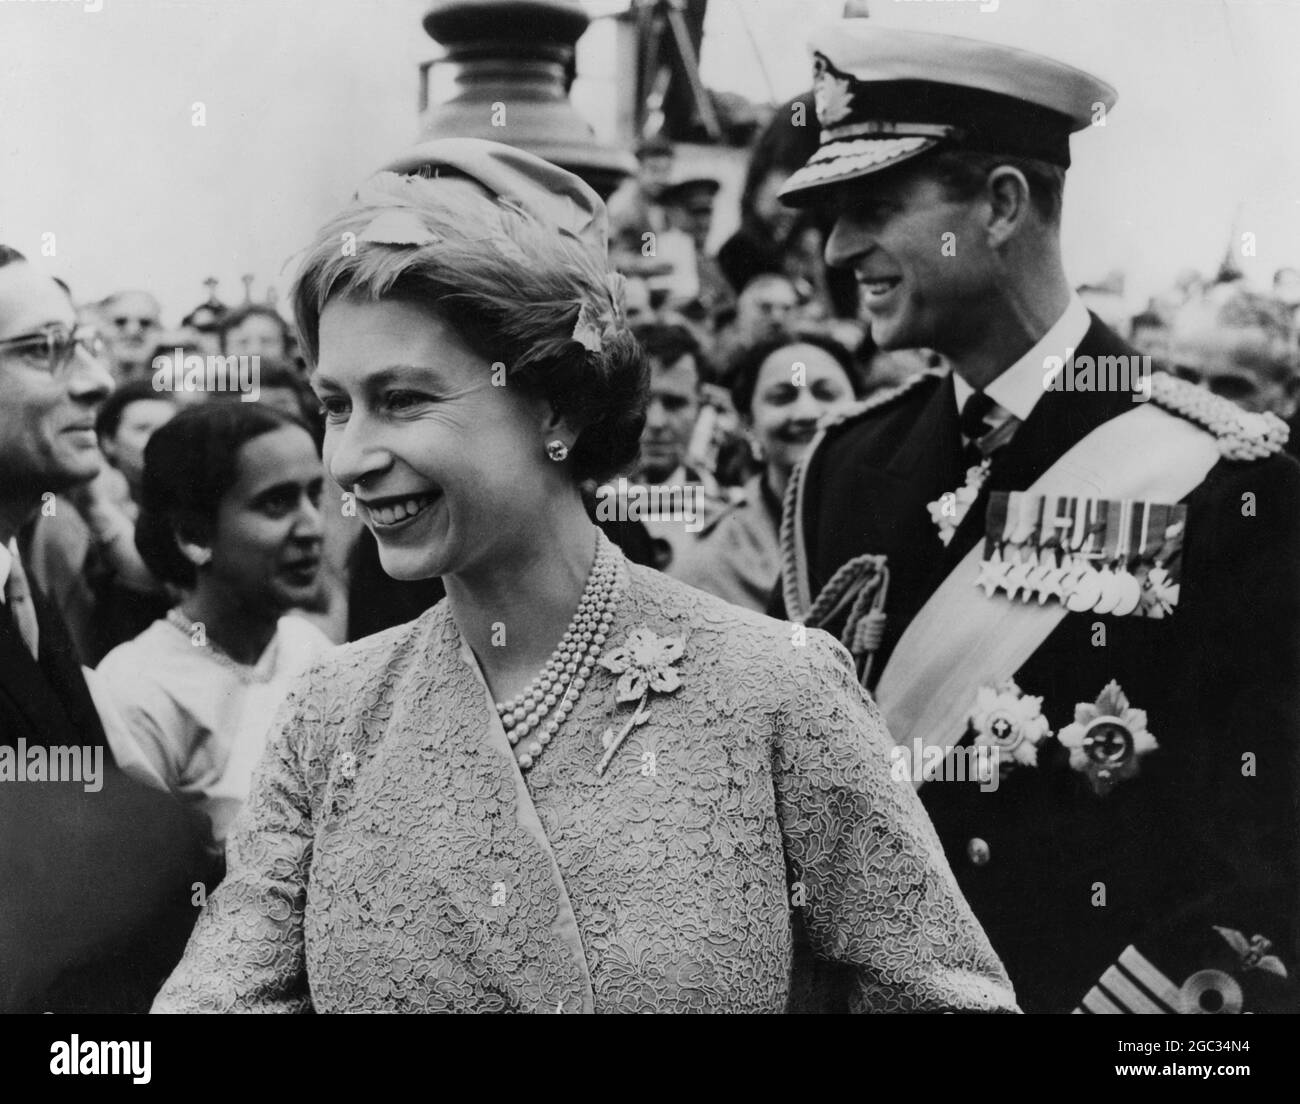 Staatsbesuch in Dänemark die Königin und der Herzog von Edinburgh kommen gestern zum Staatsbesuch in Dänemark nach Kopenhagen. Foto zeigt: Ein glückliches Bild von Königin HM und Prinz Philip, als sie gestern in Kopenhagen ankamen. Mai 1957 Stockfoto